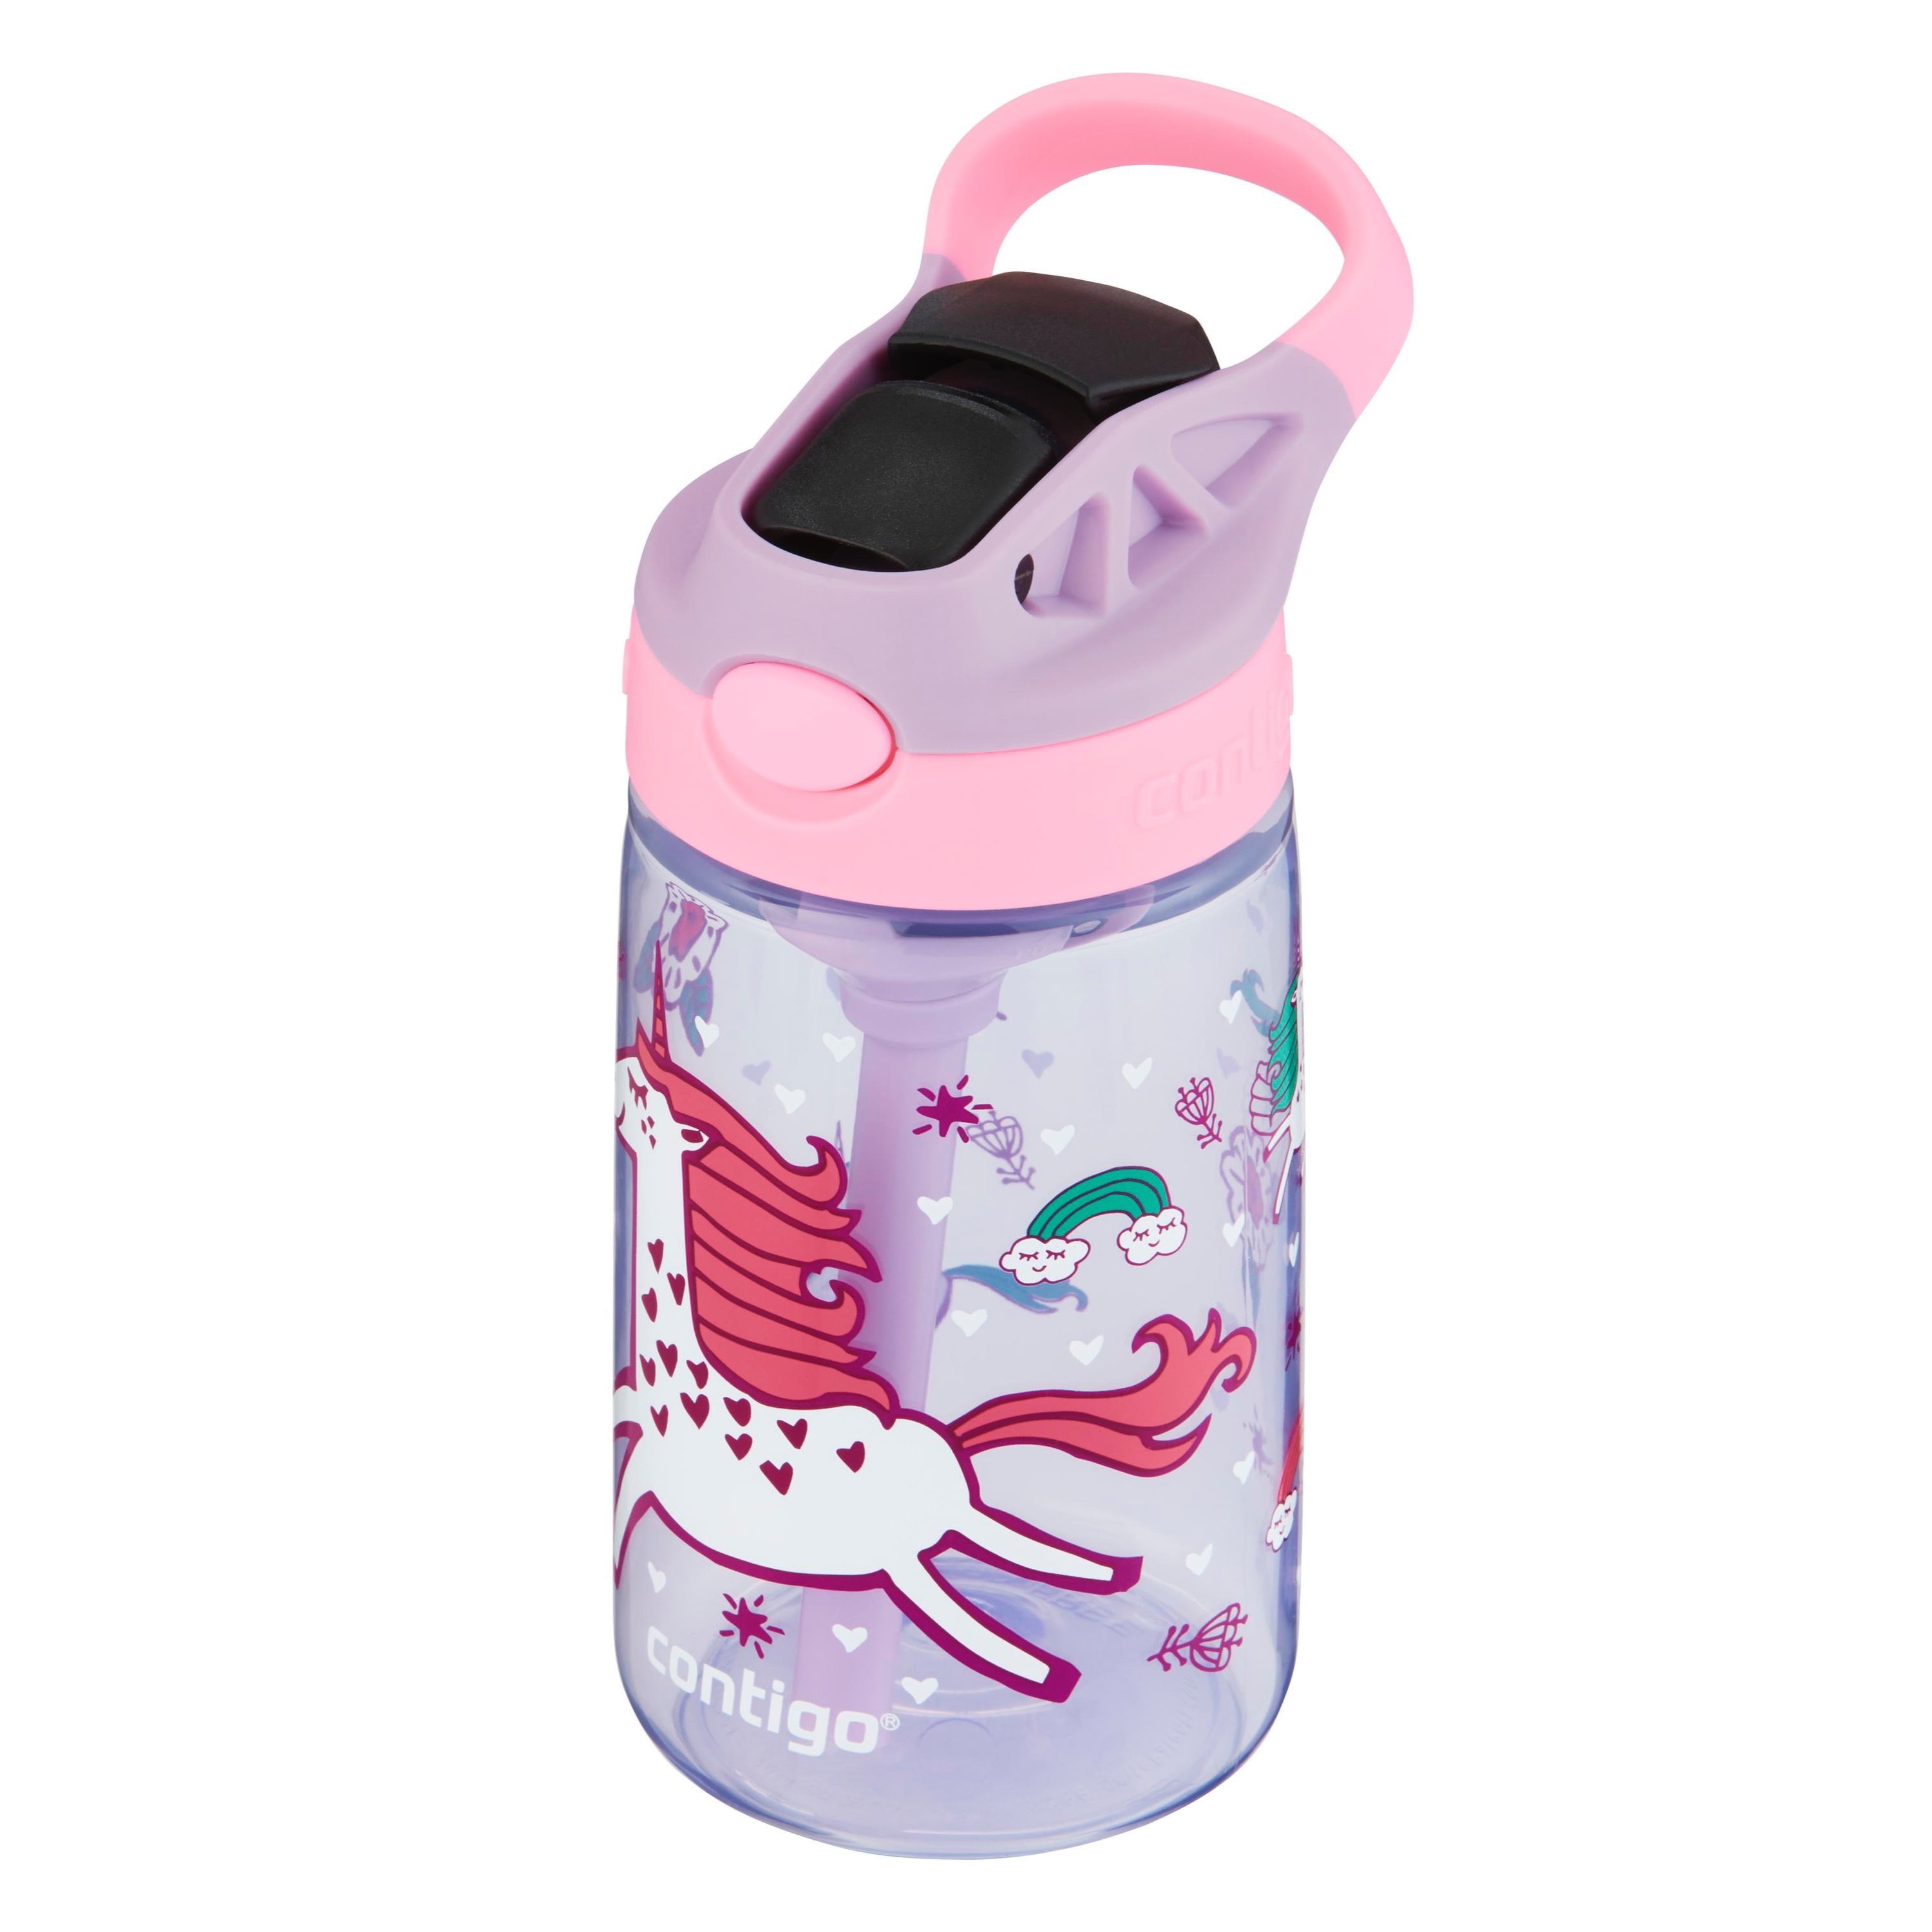 Contigo Kids Water Bottle, Striker No-Spill, Petal Pink, 14 Ounce